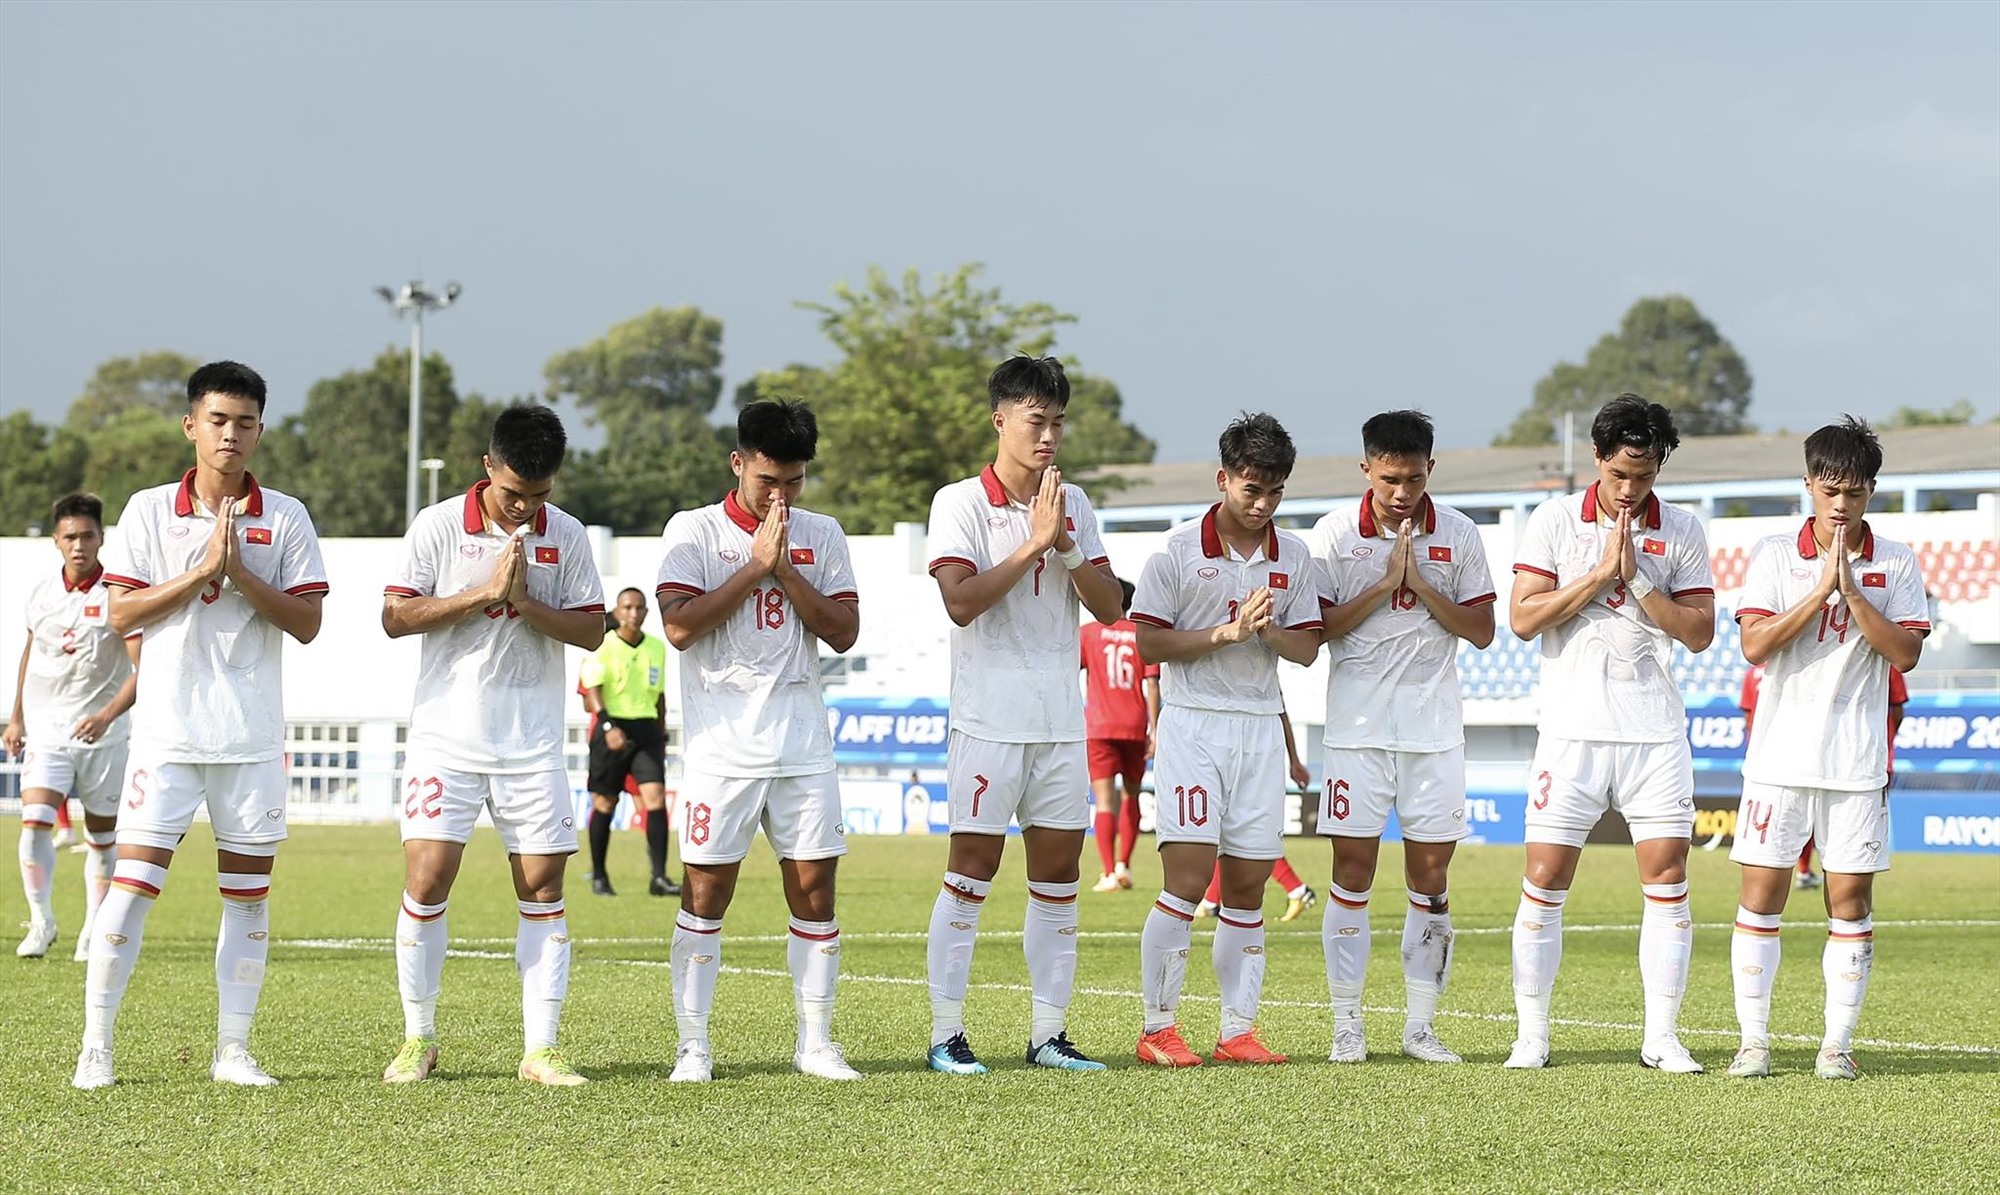 Trong thế trận bế tắc thì U23 Việt Nam lại có bàn mở tỉ số ở phút 24. Sau khi có bàn thắng, các cầu thủ U23 Việt Nam đã có hành động tưởng nhớ 3 thành viên Hoàng Anh Gia Lai.